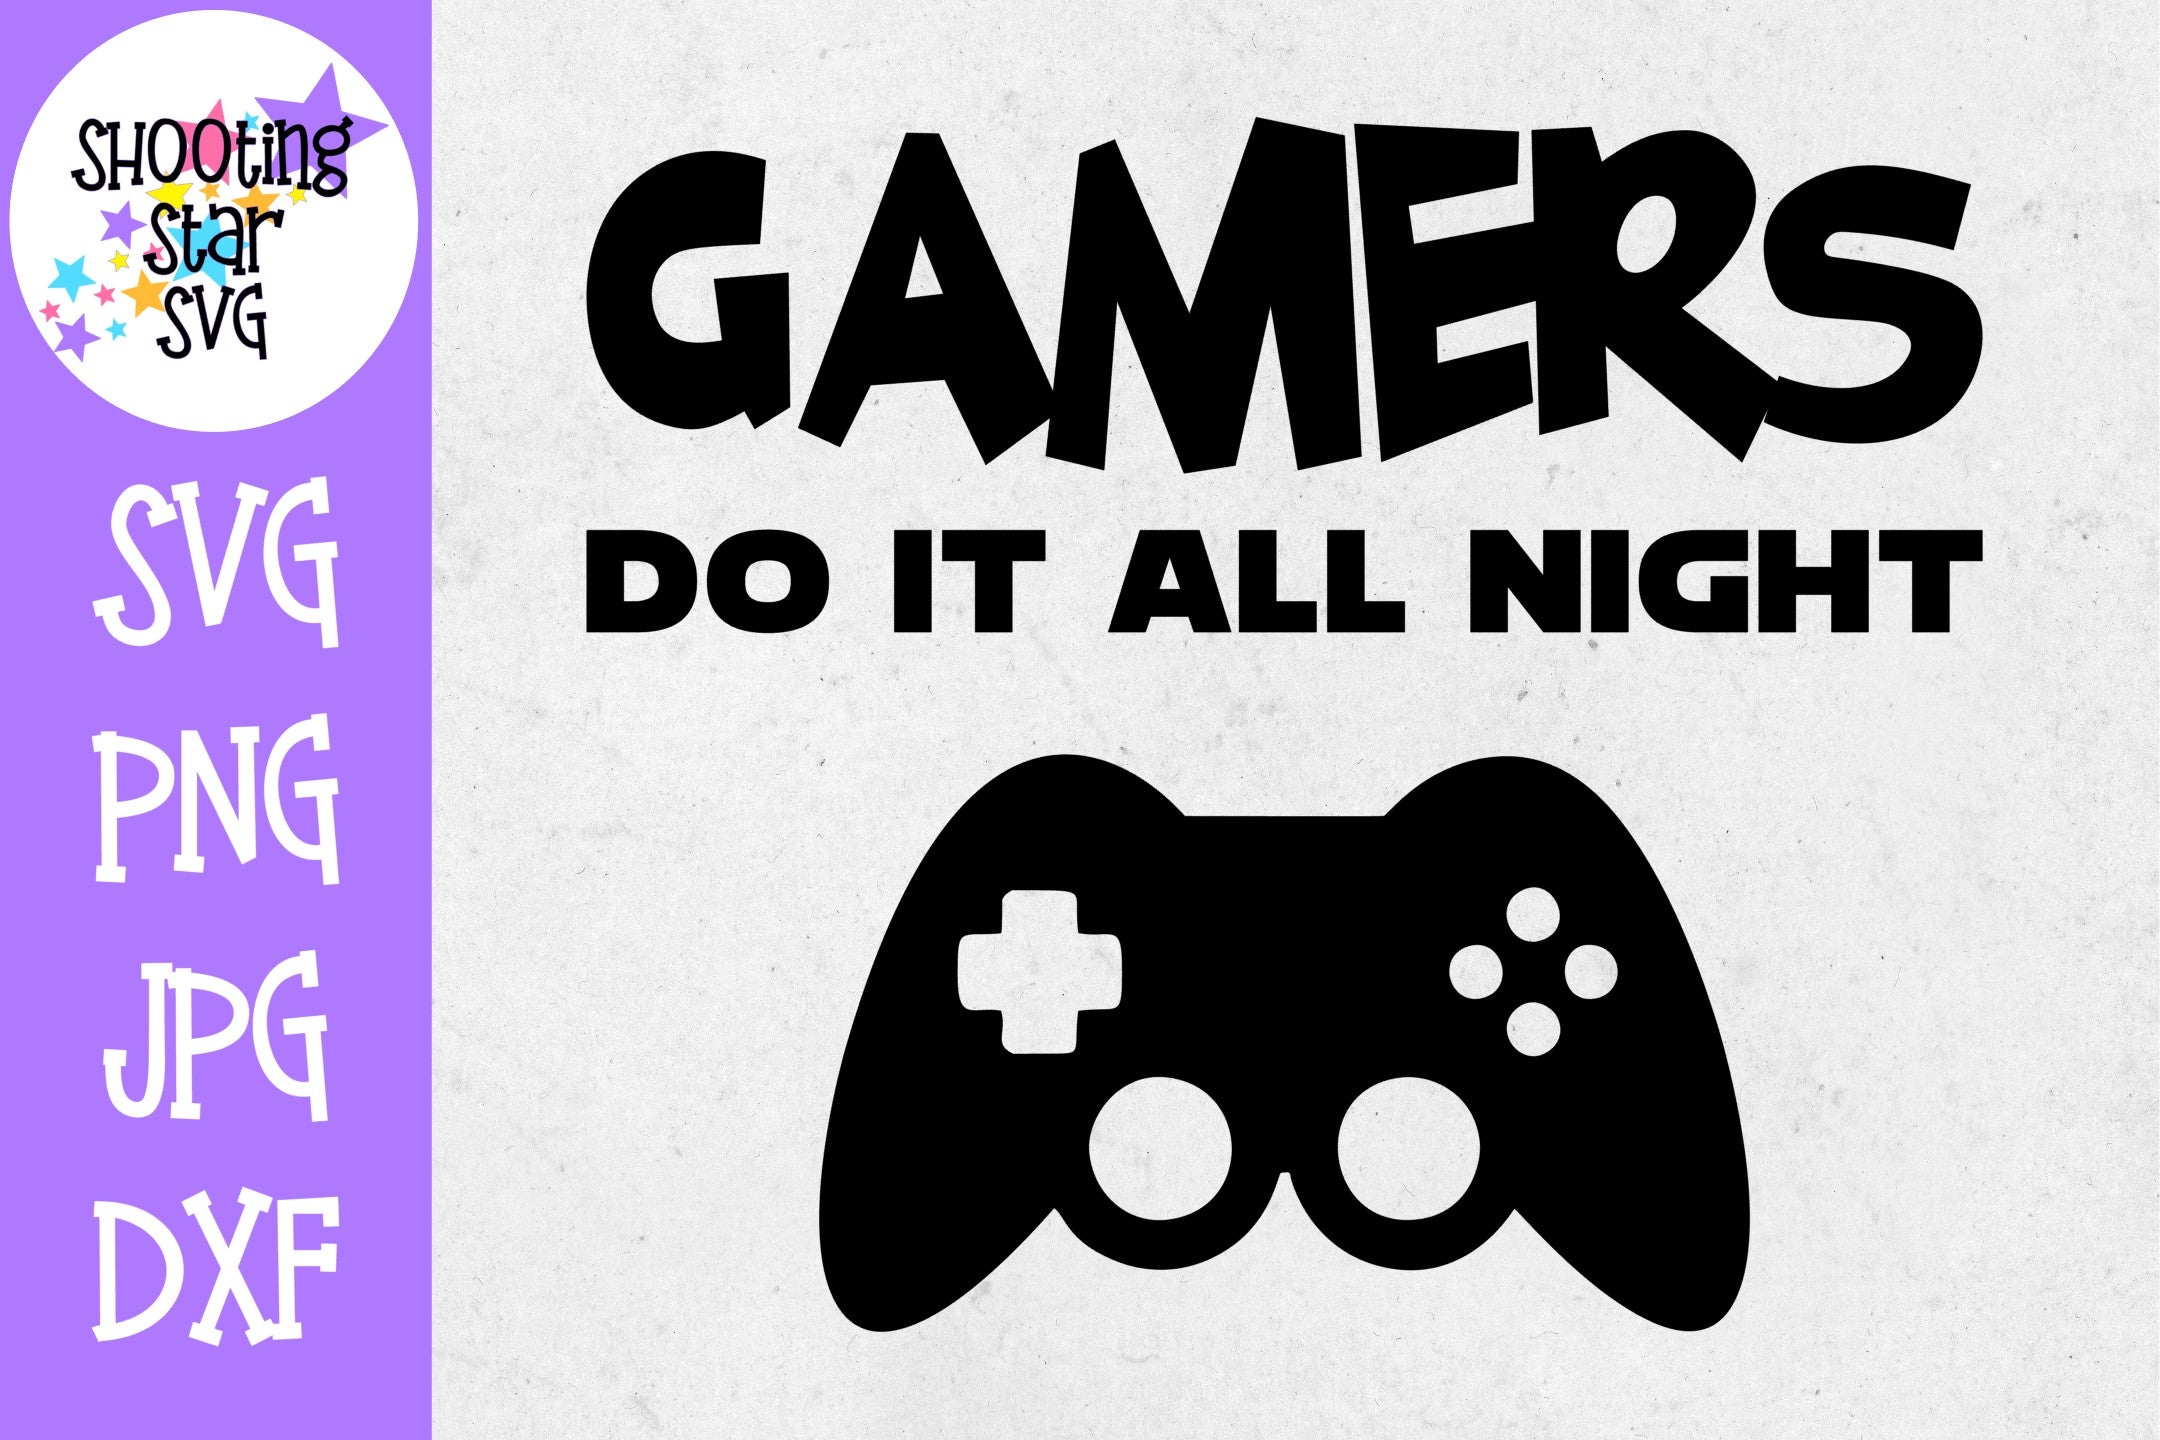 Gamers do it all night SVG - Video Gamer SVG - Nerdy SVG